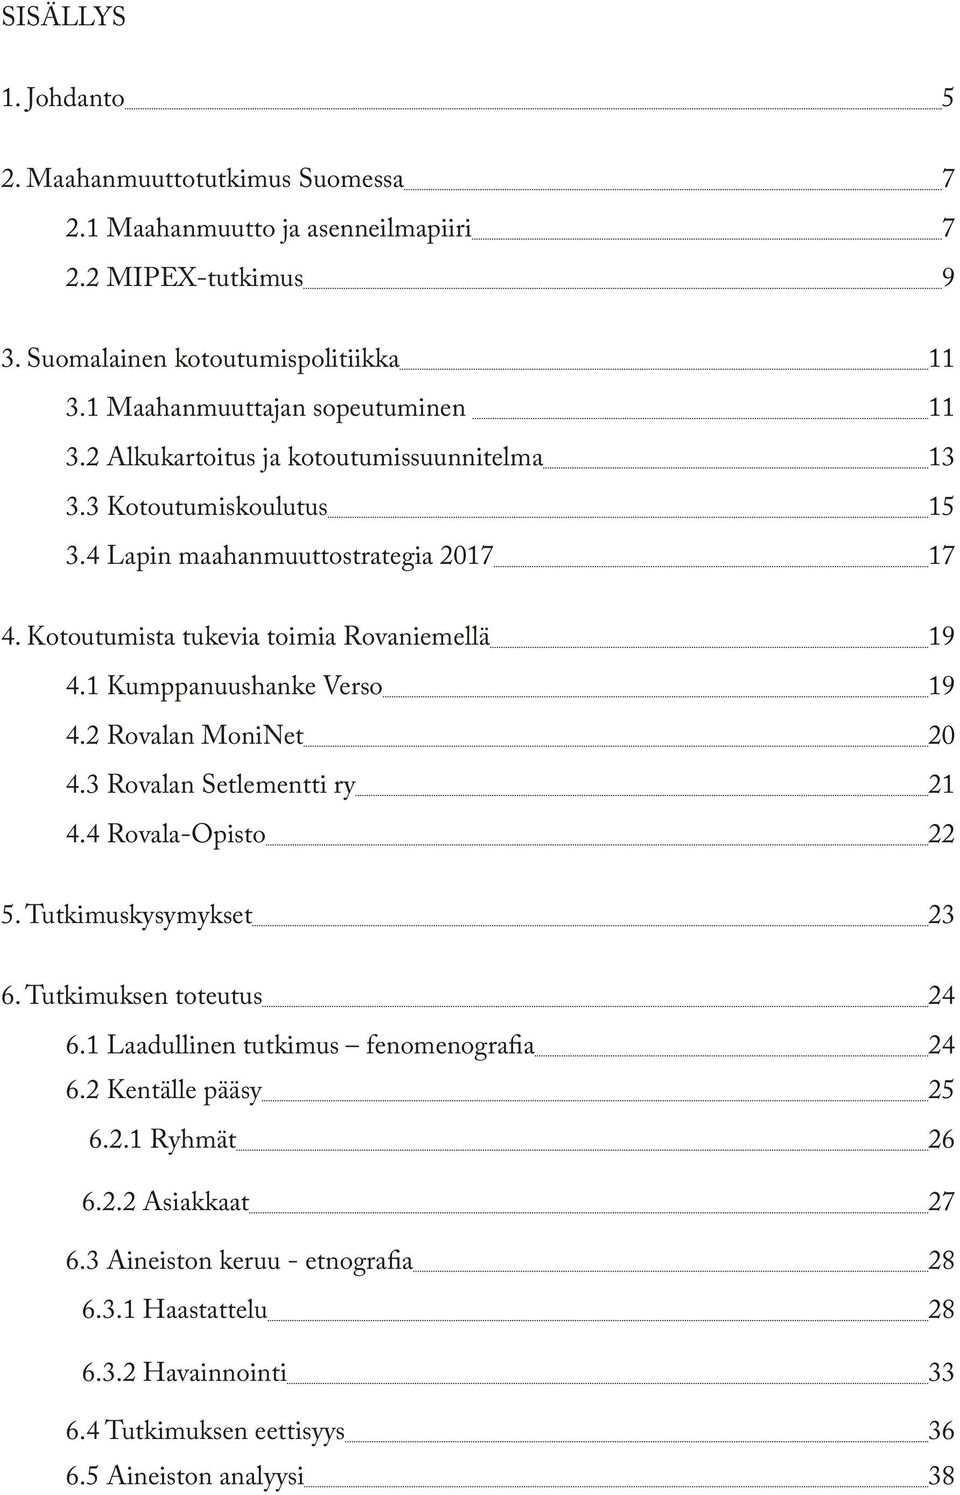 Kotoutumista tukevia toimia Rovaniemellä 19 4.1 Kumppanuushanke Verso 19 4.2 Rovalan MoniNet 20 4.3 Rovalan Setlementti ry 21 4.4 Rovala-Opisto 22 5. Tutkimuskysymykset 23 6.